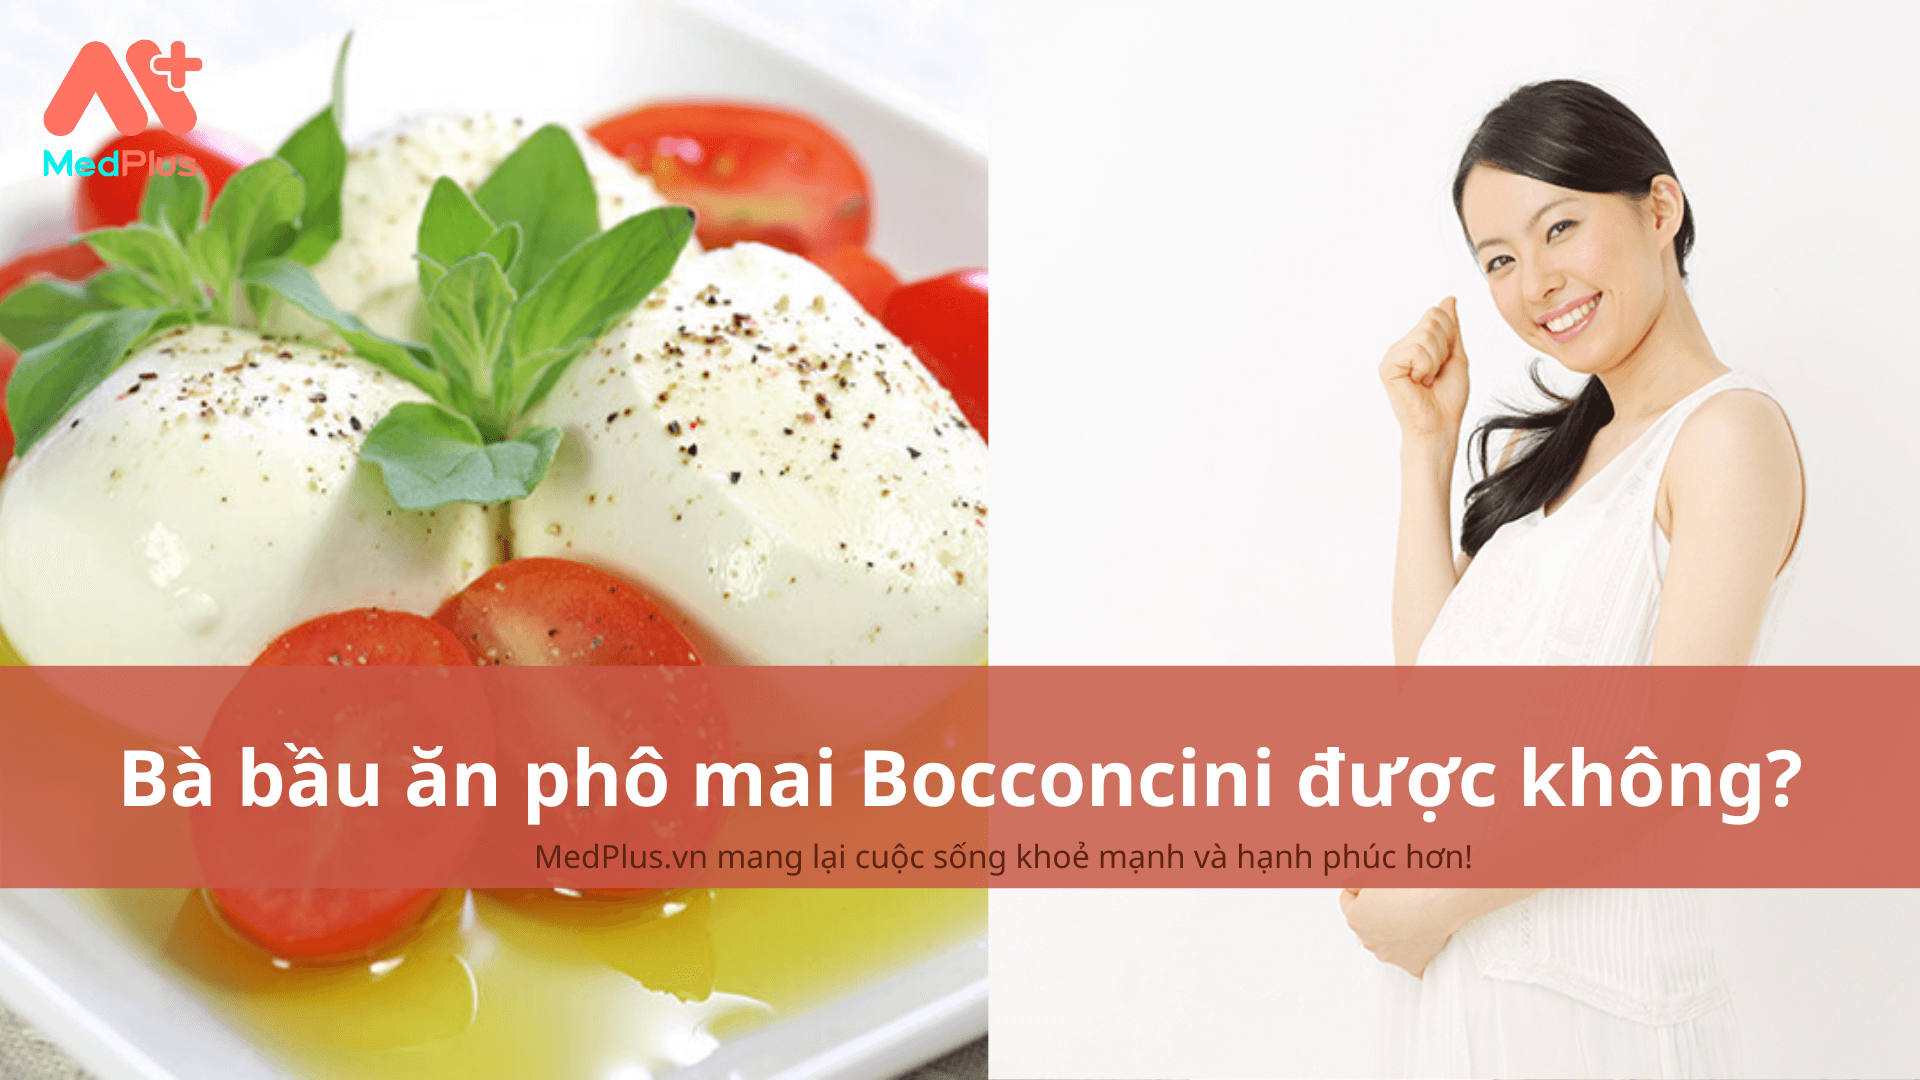 Bà bầu ăn phô mai Bocconcini được không?